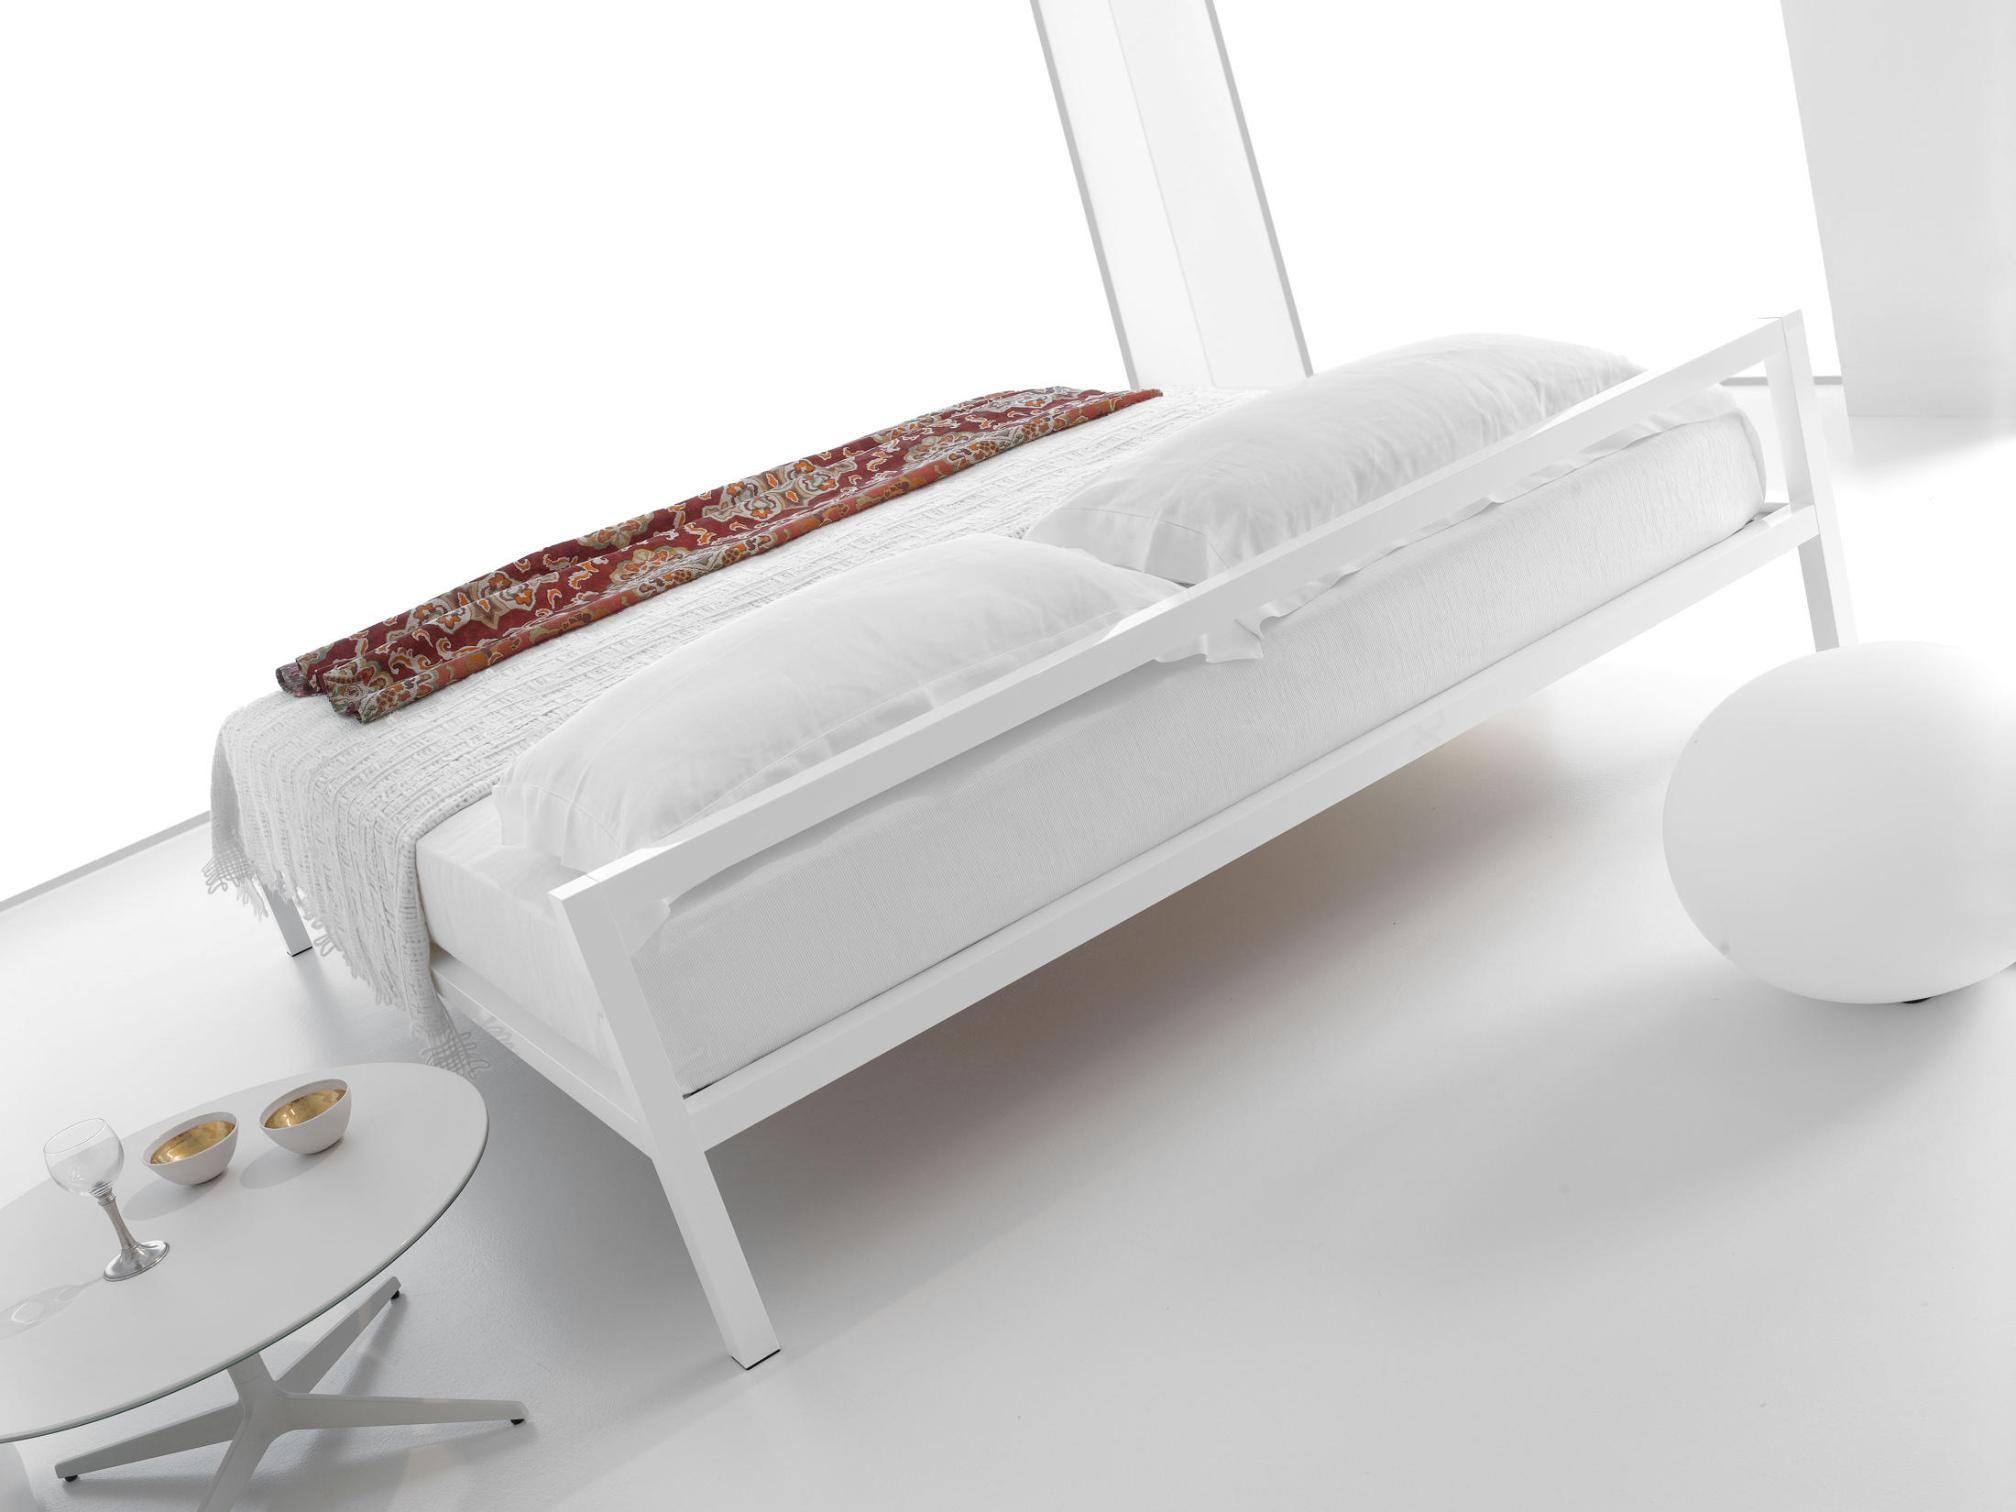 Aluminium Bed Italy ☞ Structure: Matt Painted White X053 ☞ Dimensions: 160 x 210 cm